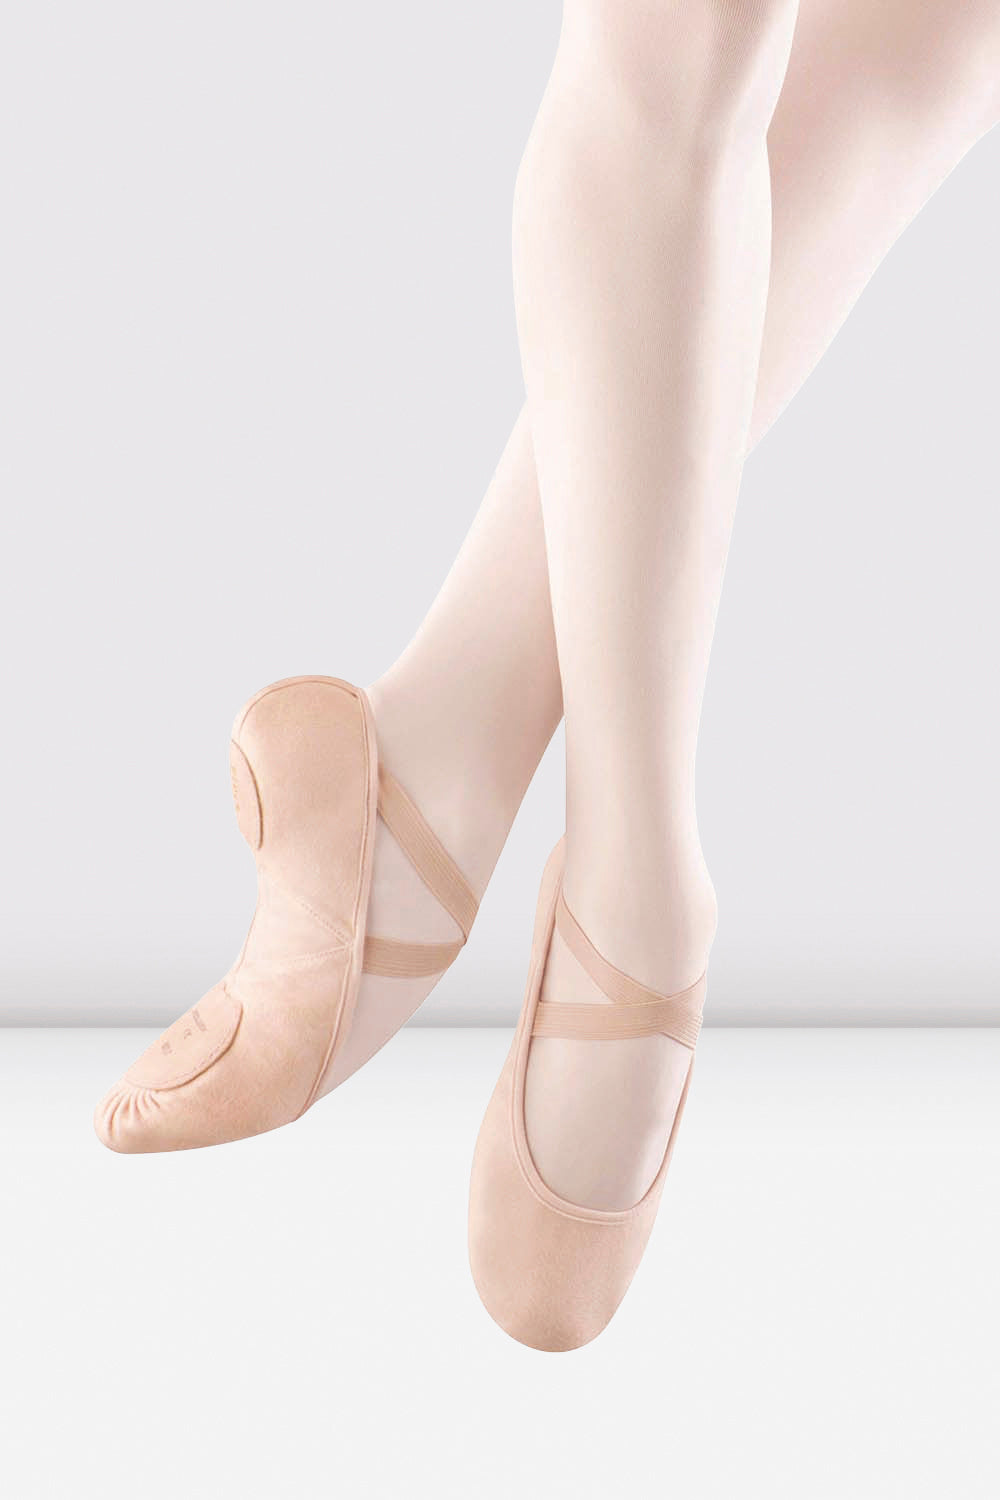 BLOCH Ladies Pro Arch Canvas Ballet Shoes, Pink Canvas